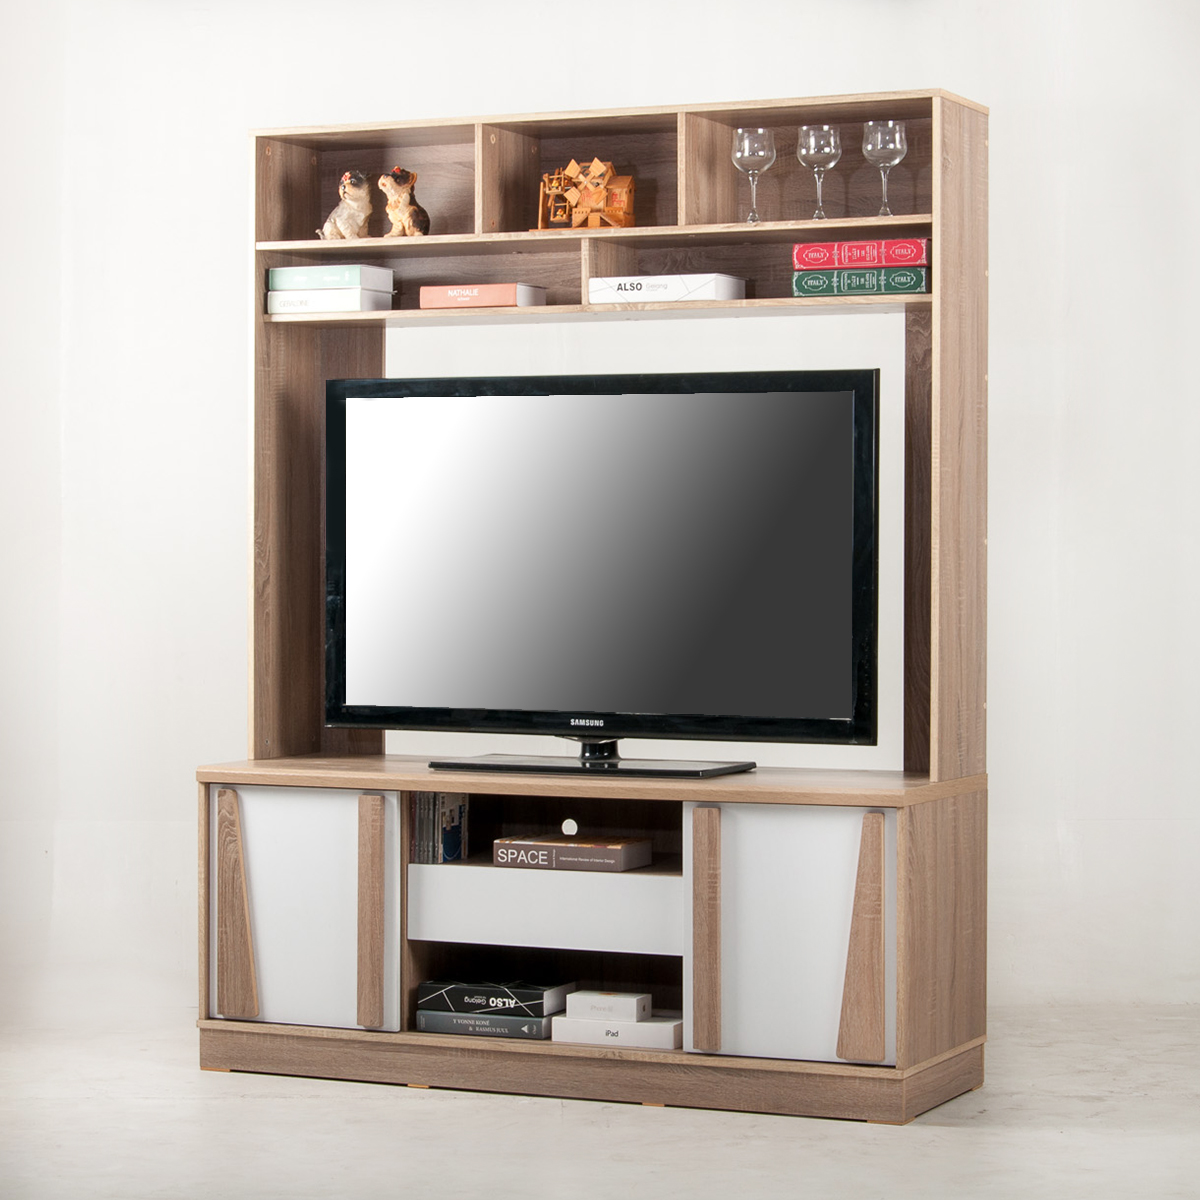 ส่งฟรี! ตู้วางทีวี ชั้นวางทีวี ขนาดใหญ่ 150 ซม. วางทีวี 65 นิ้วได้ TV stand cabinet HT1501